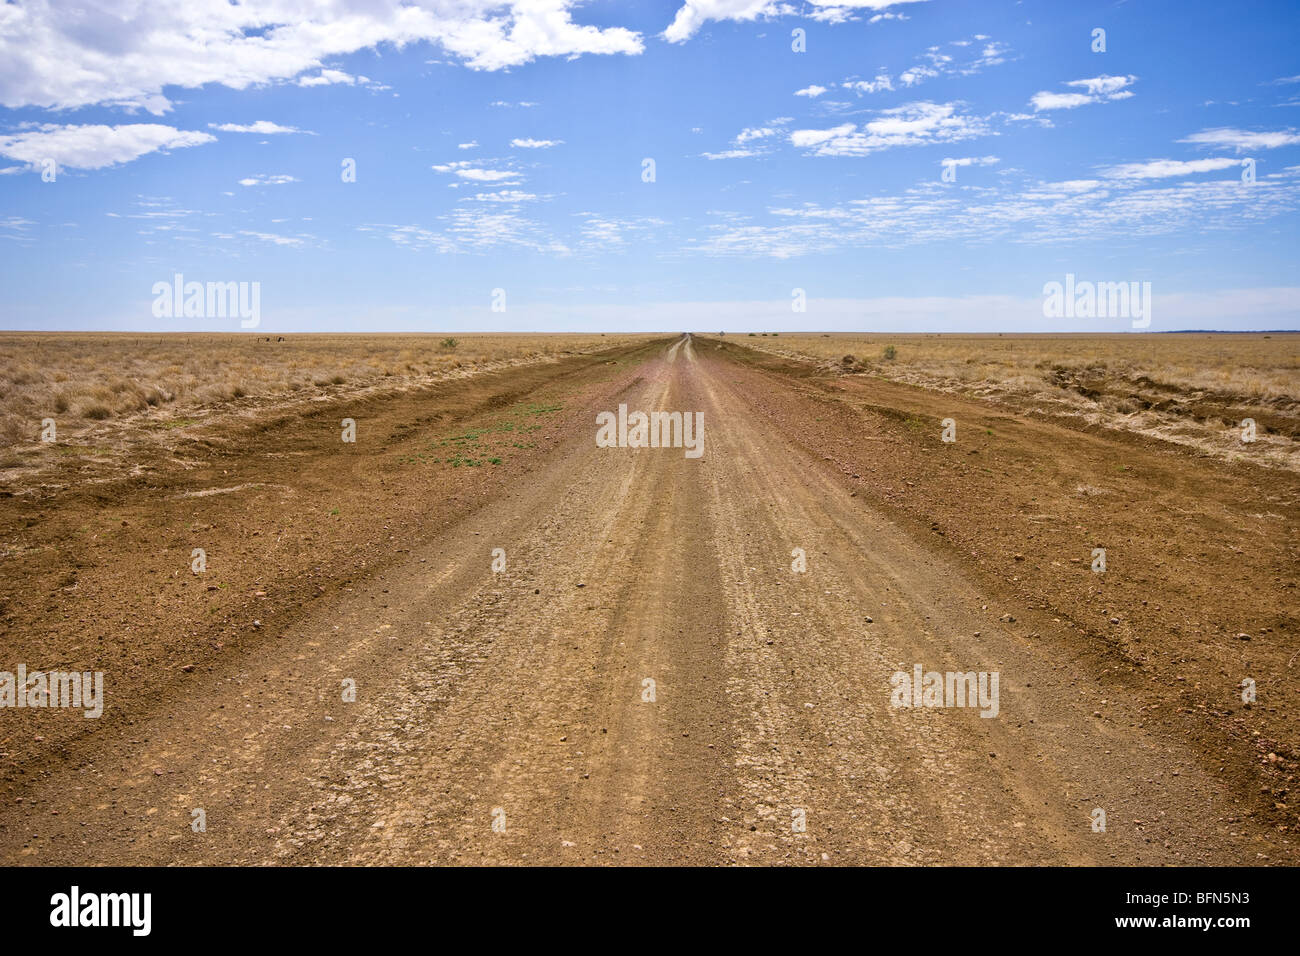 Eine grobe Schotterpiste bildet eine wichtige Verkehrsader im Outback. Stockfoto